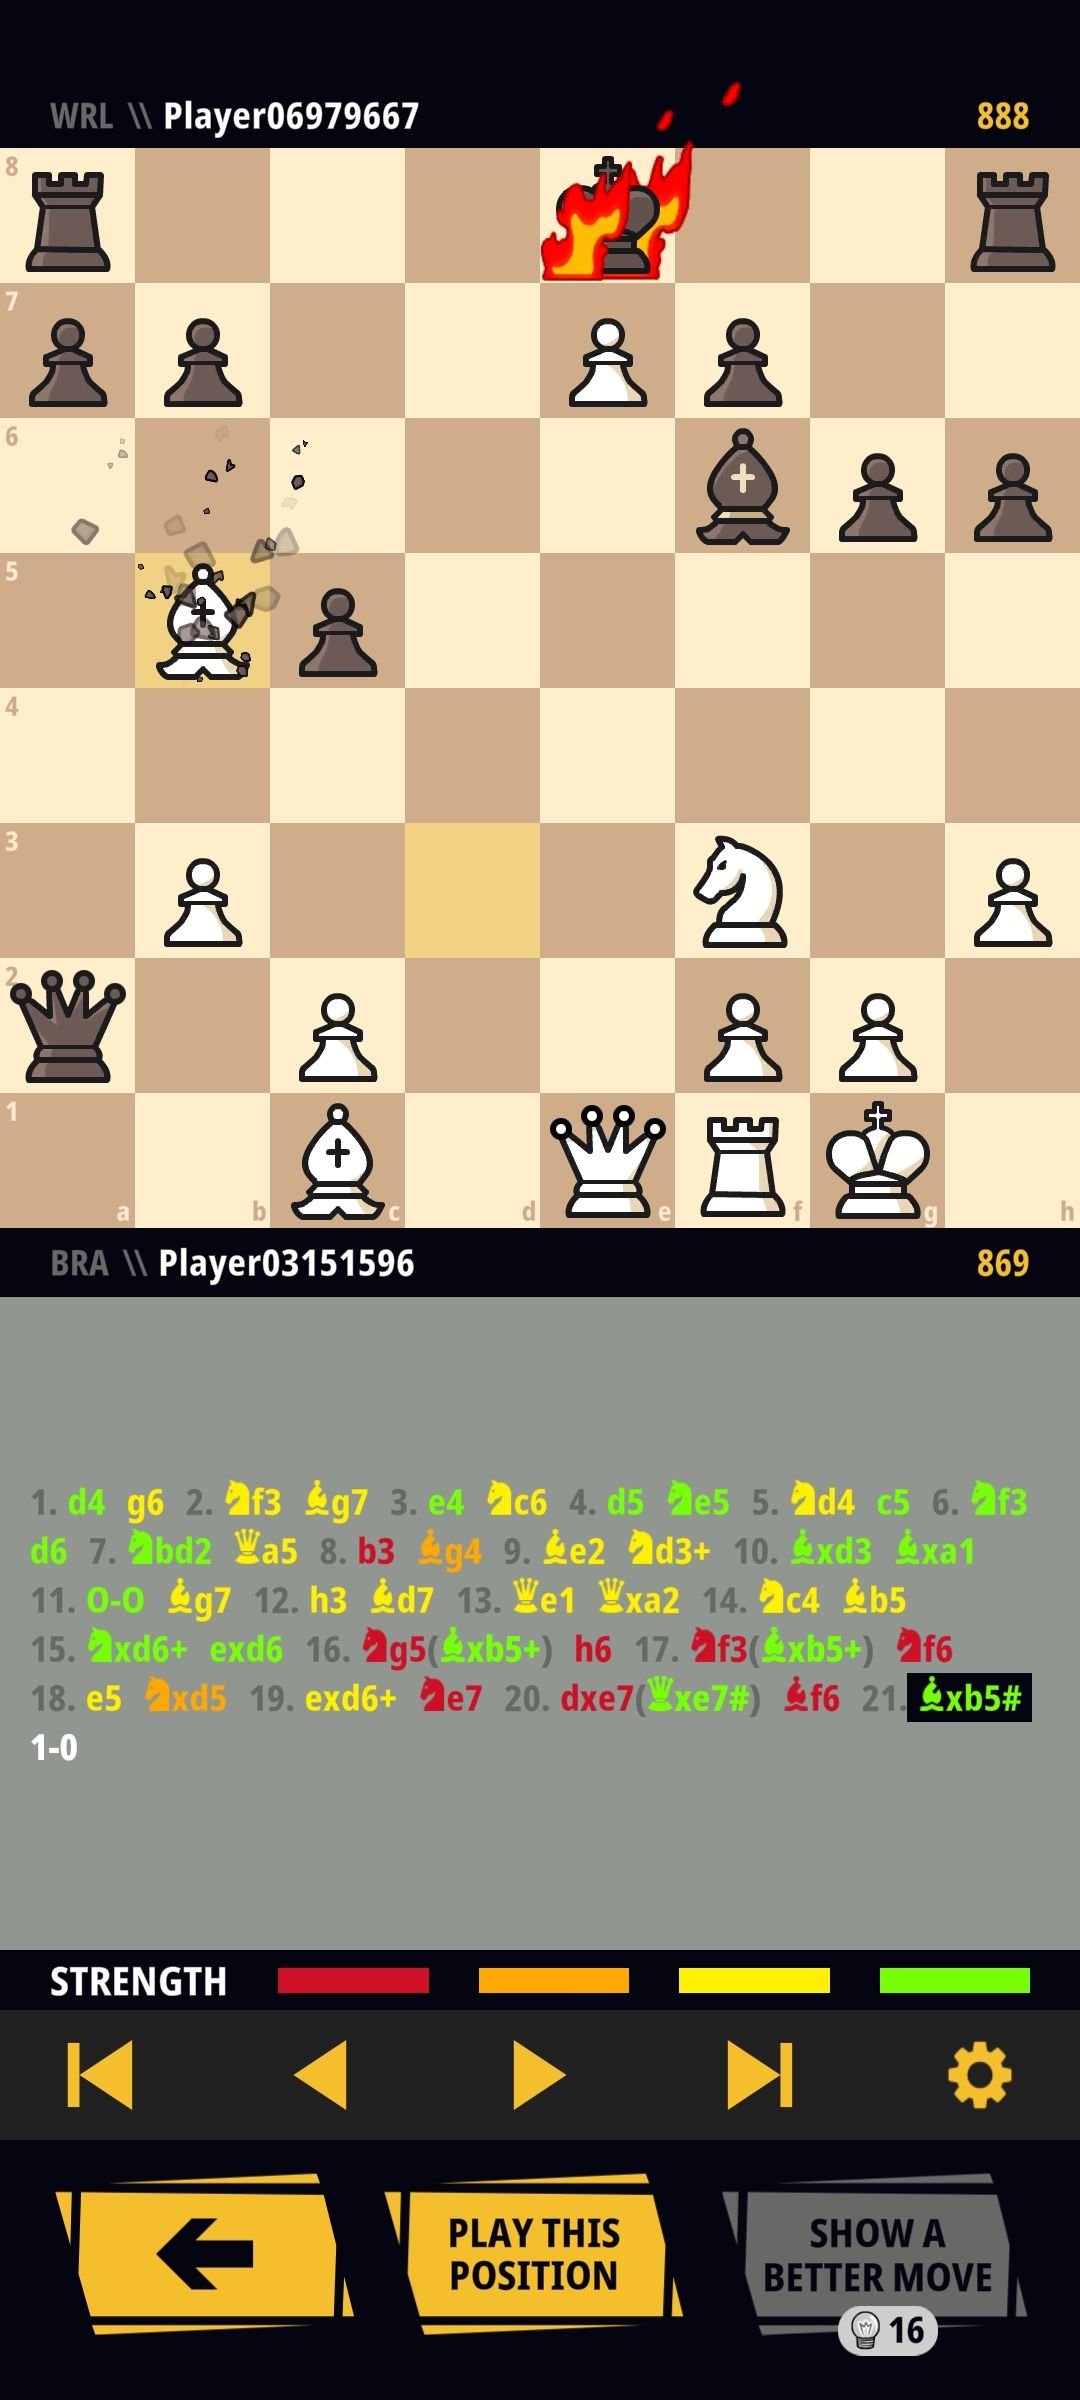 Modern Defense with 1.e4 - Aberturas de Xadrez 